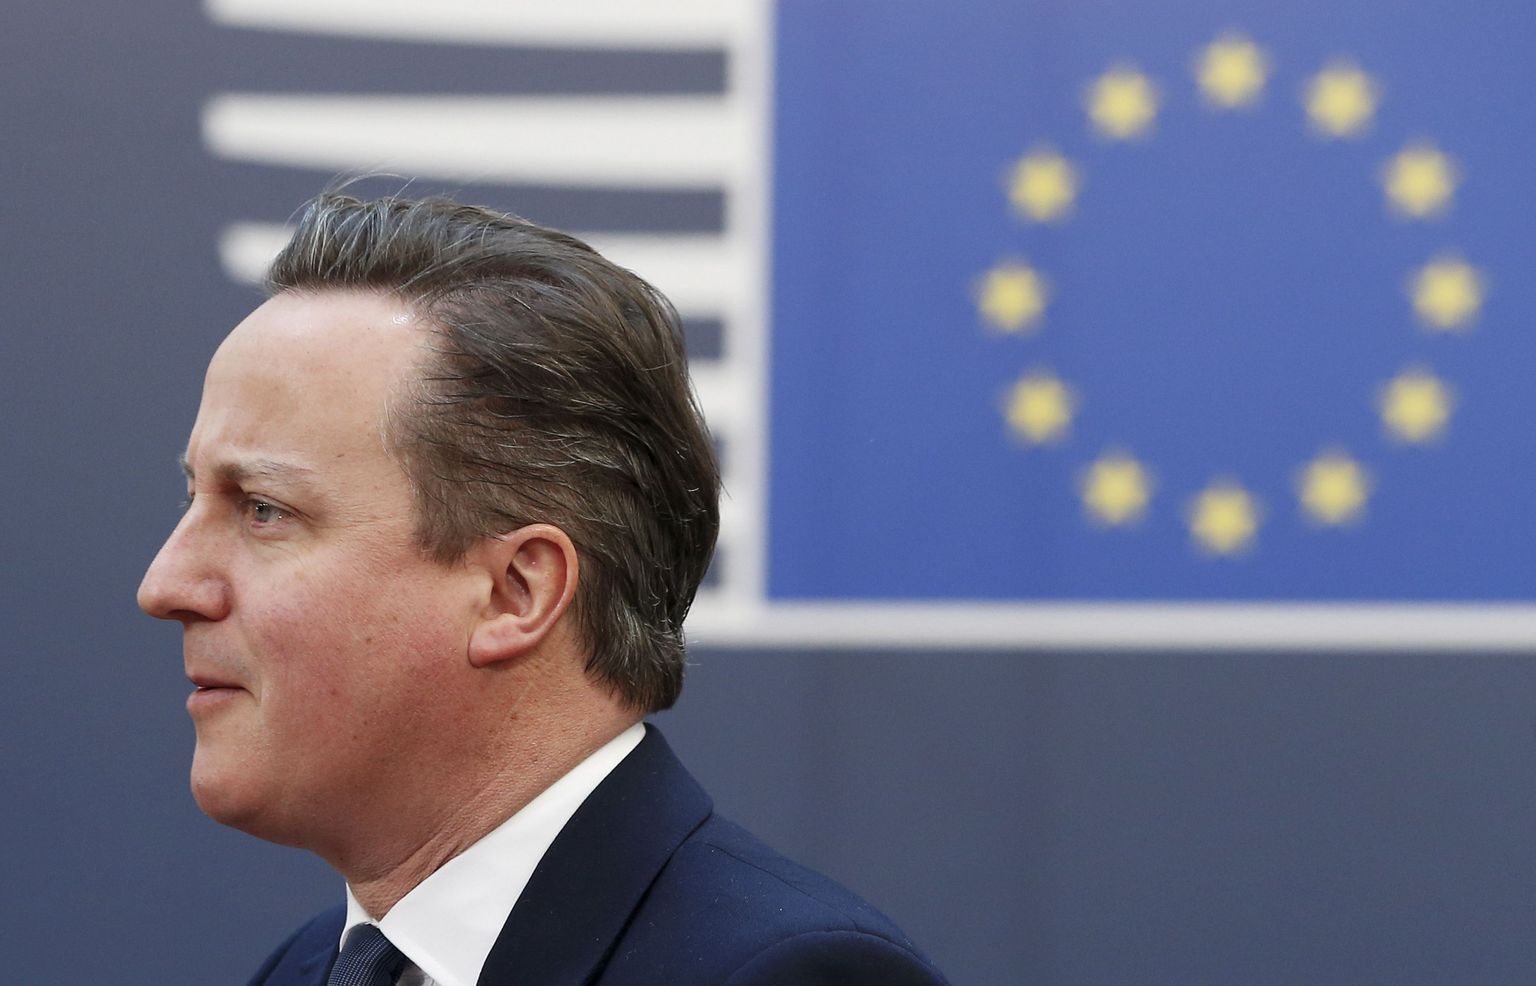 Briti peaministril David Cameronil tuli Brüsselis oma ELi kolleegidele teha palju selgitustööd. Samas ei kindlusta ka kokkulepe Londoniga Ühendkuningriigi jätkumist ELis.